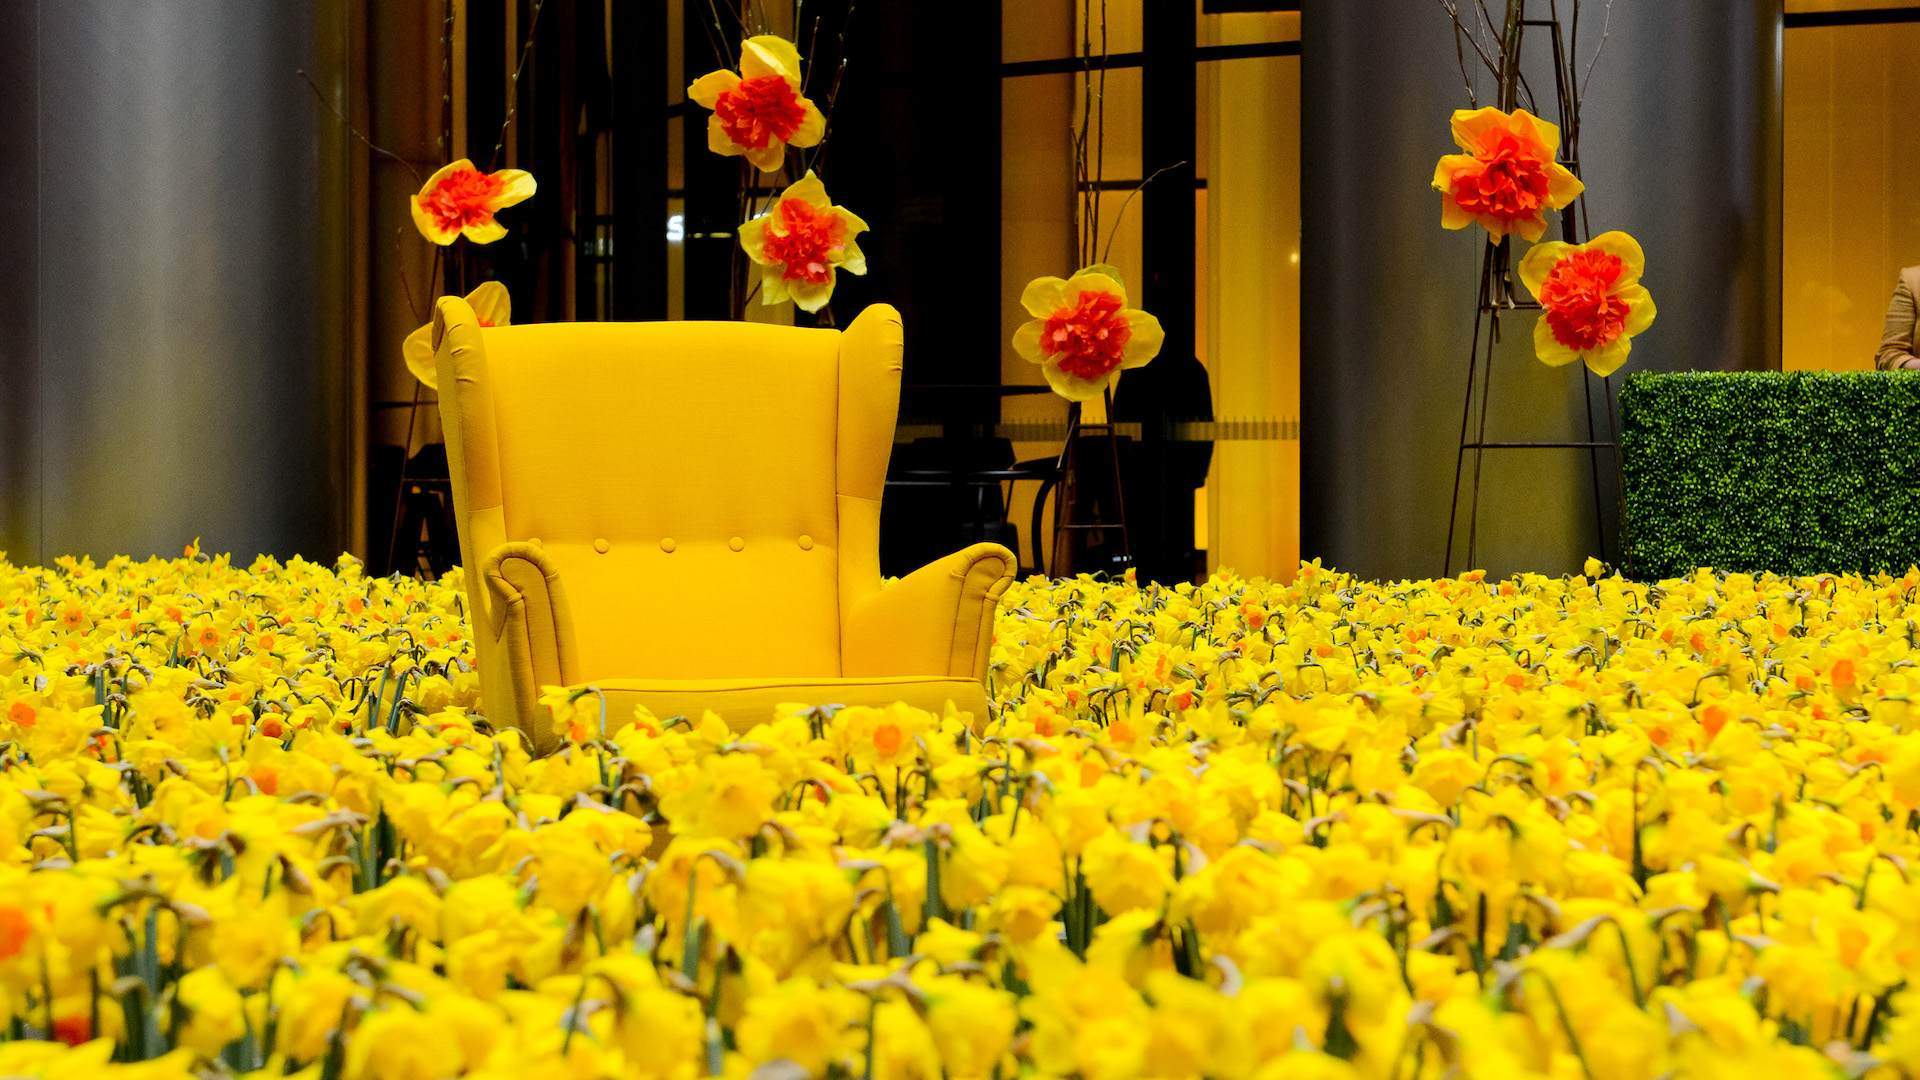 Daffodil Day 2021